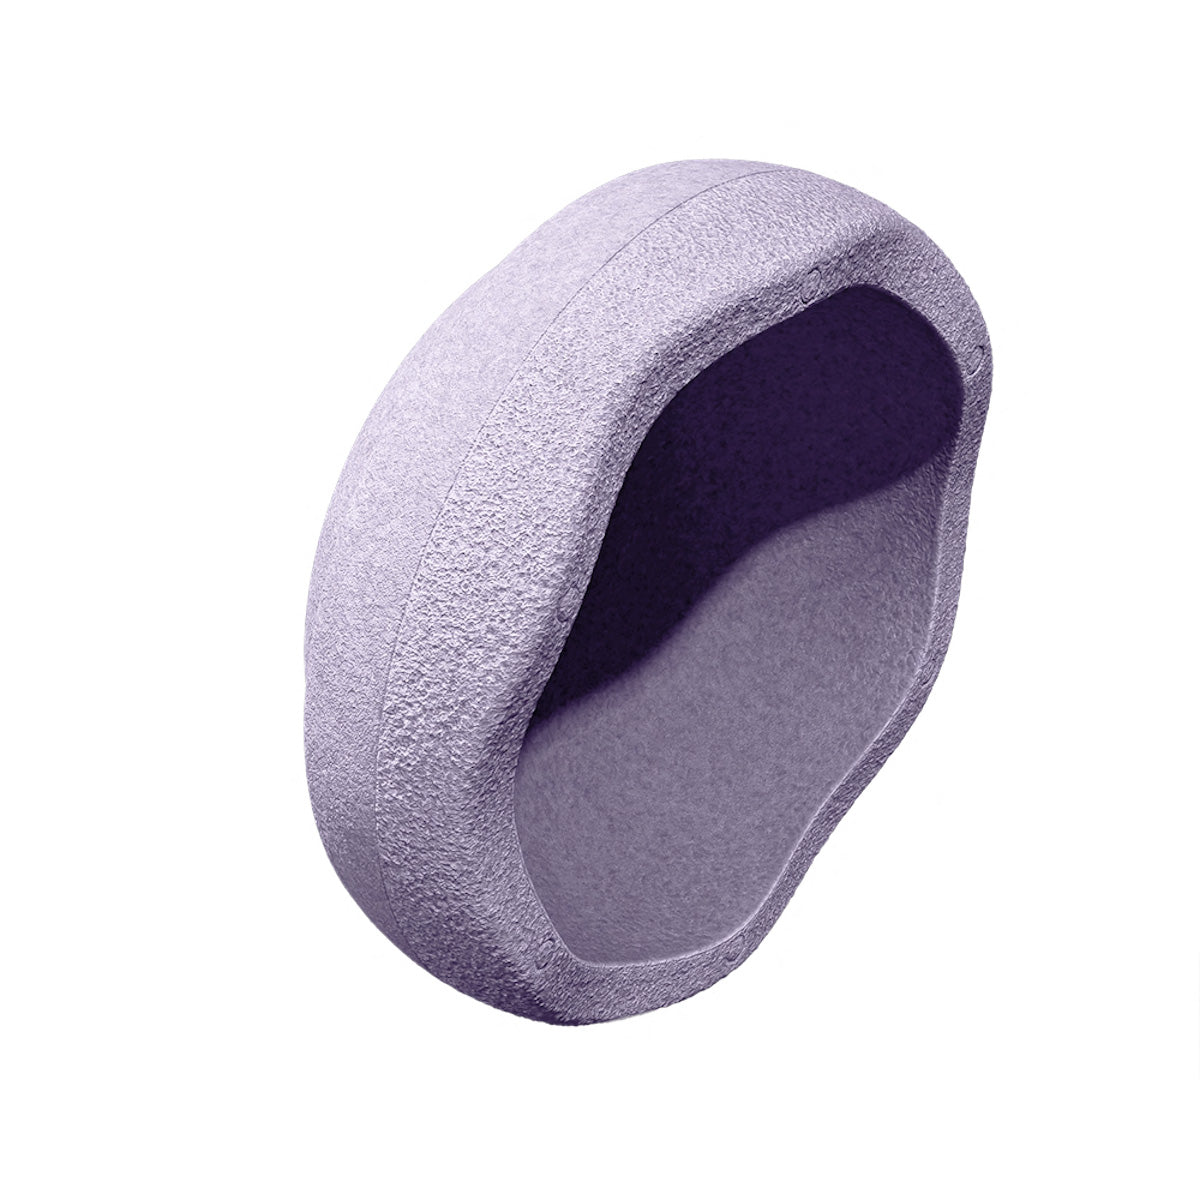 Stapelstein Original lichtviolet is het perfecte, duurzame, open einde speelgoed. Gebruik de steen om te balanceren, te bouwen of als krukje of opstapje; de mogelijkheden zijn eindeloos. VanZus.